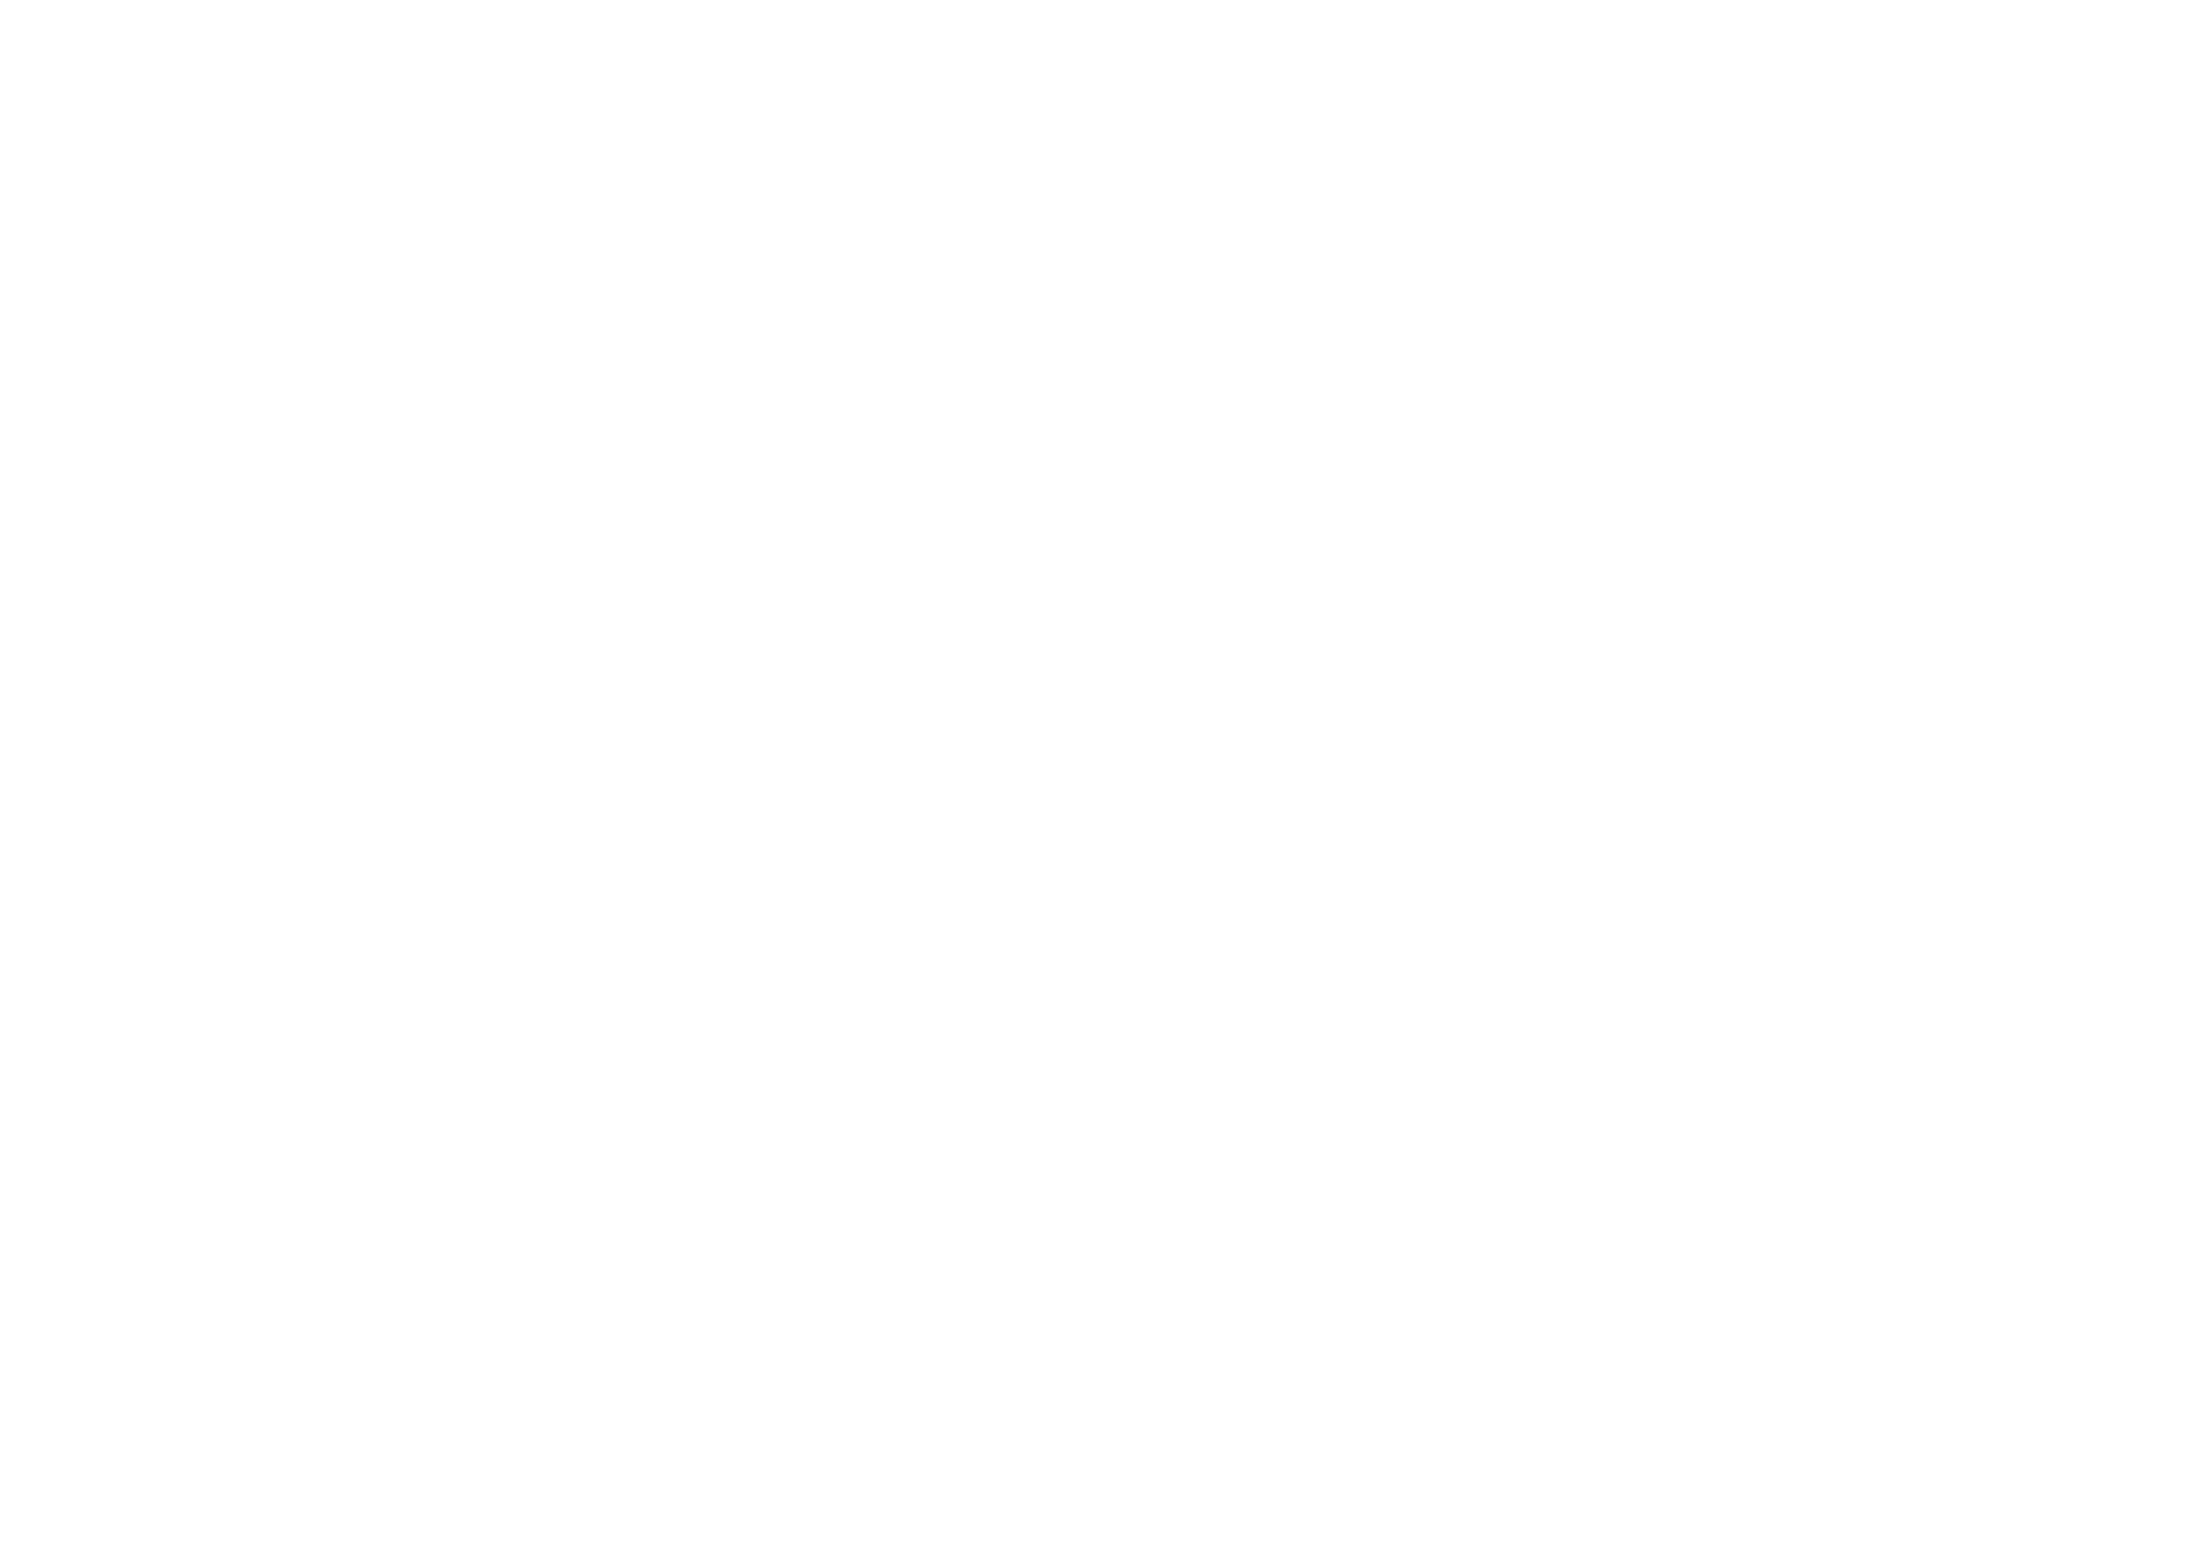 Nairobi Dacosta